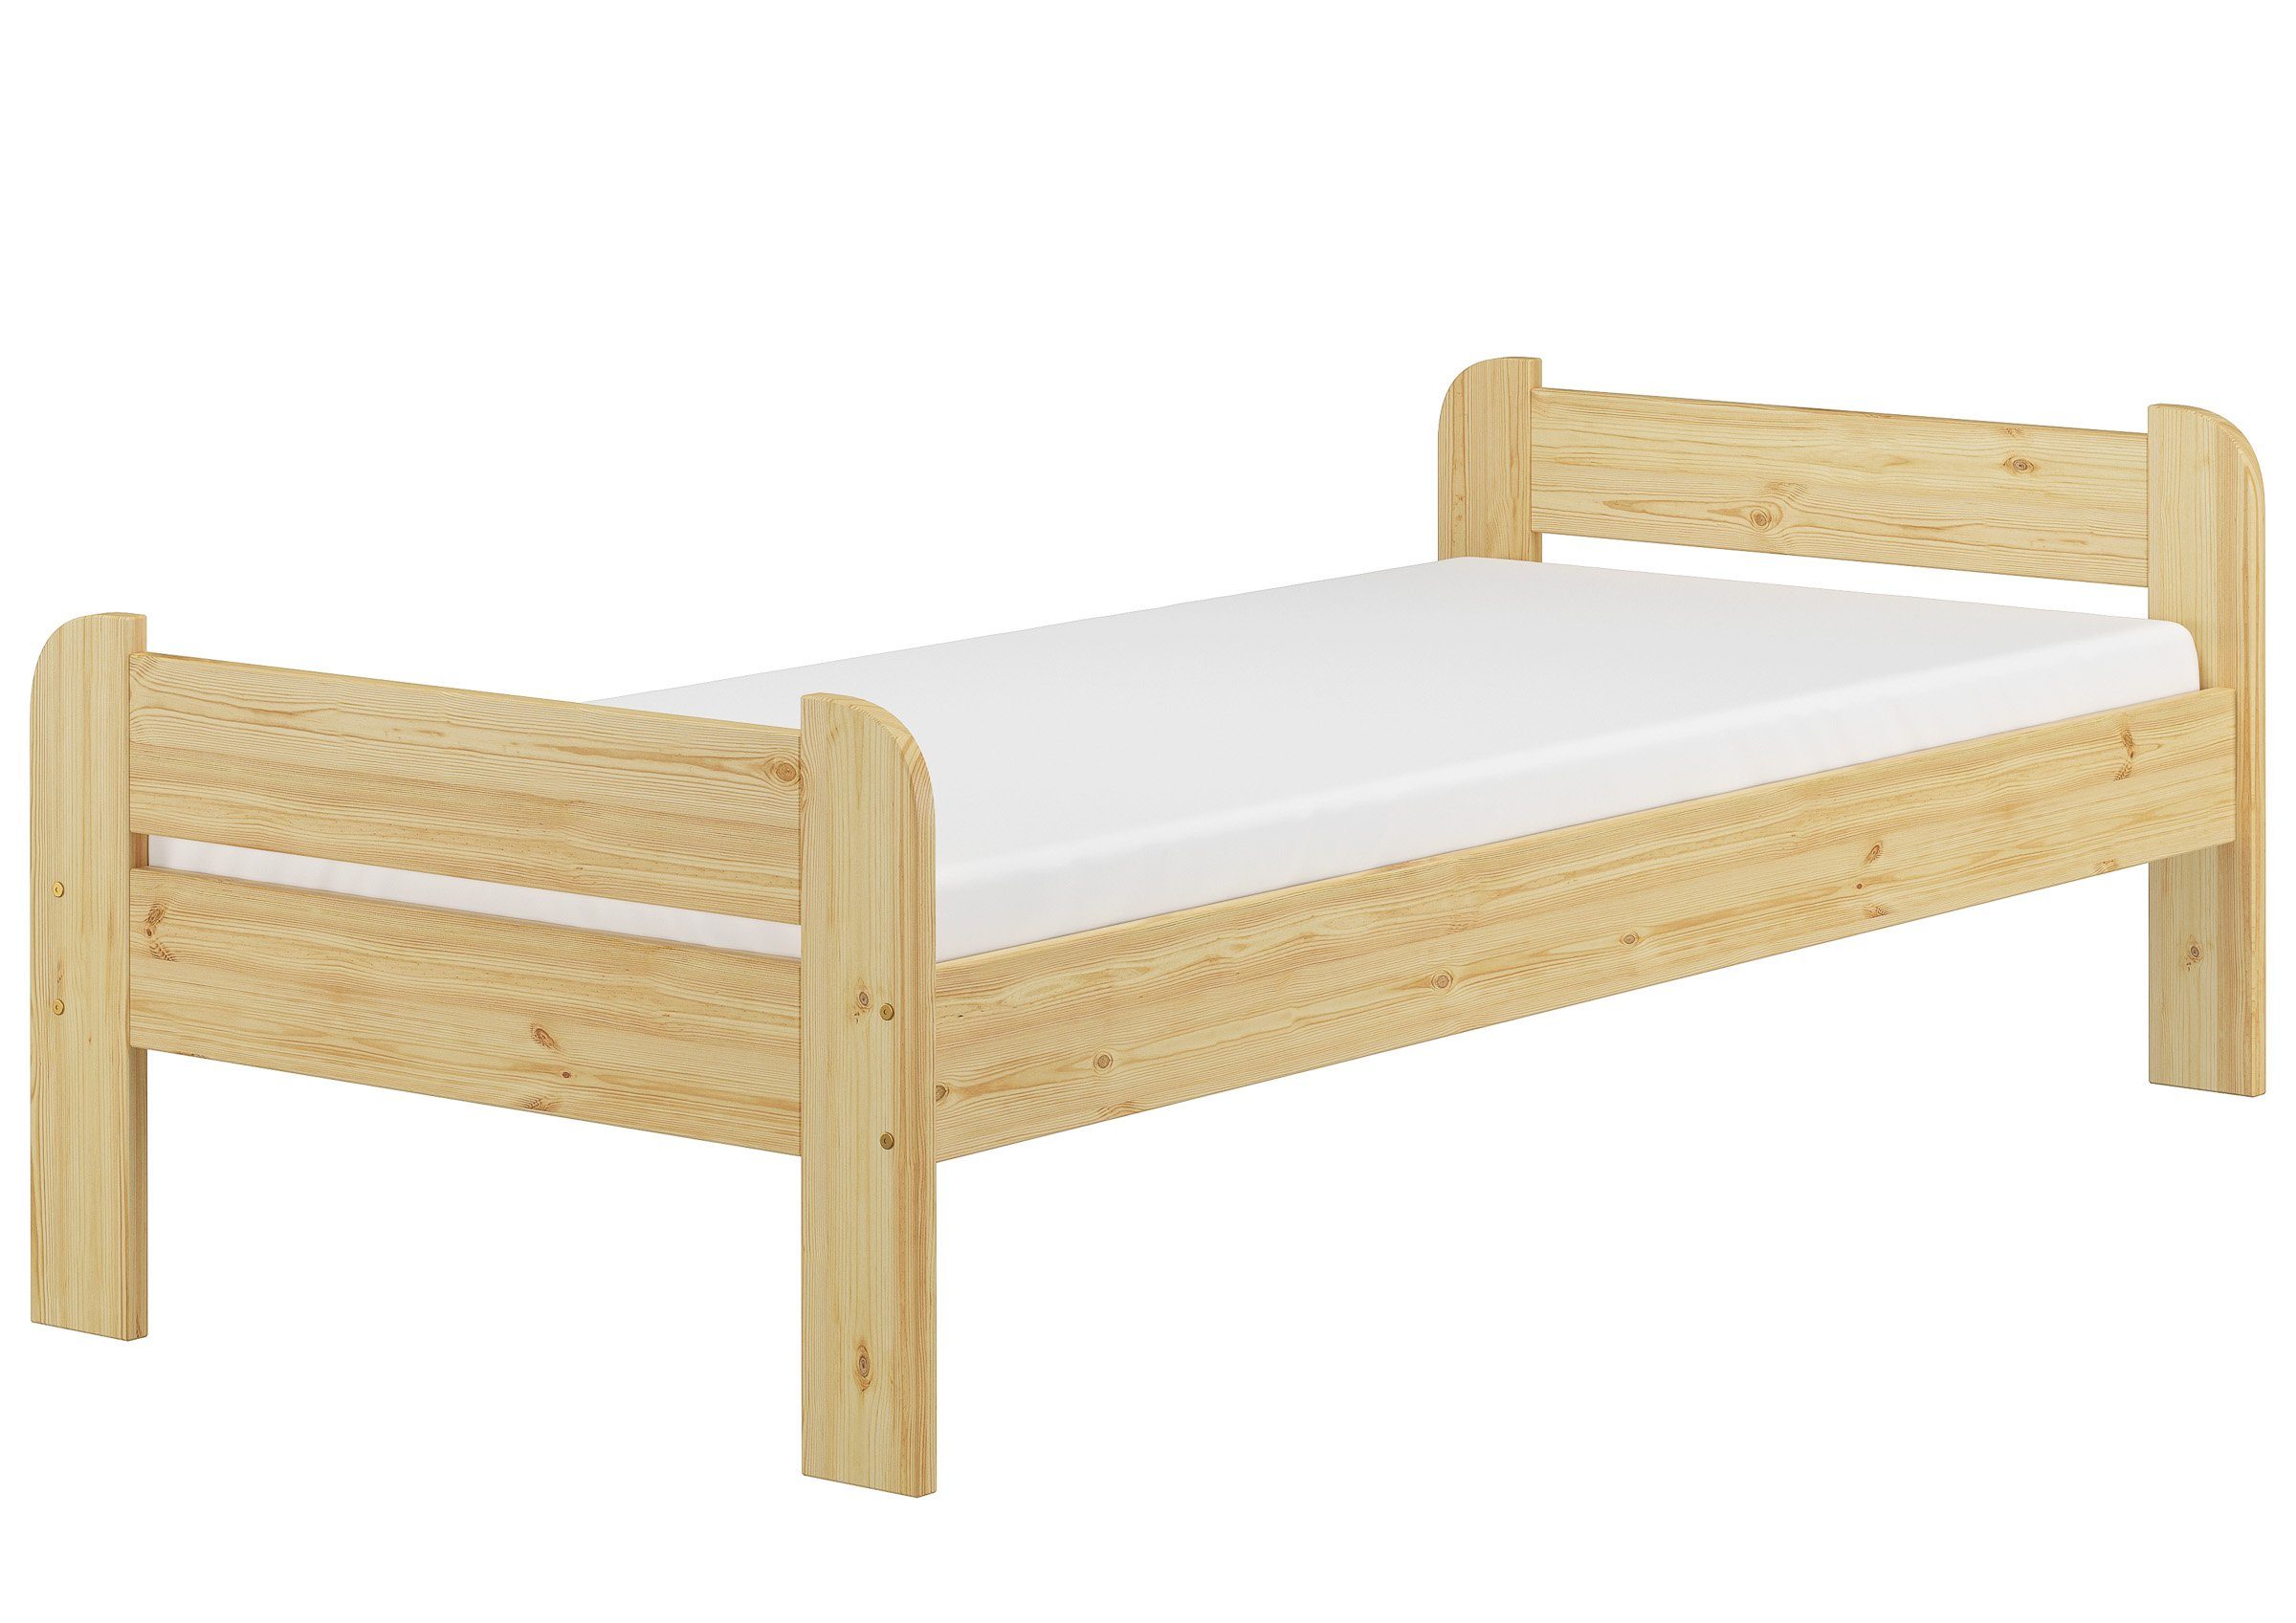 ERST-HOLZ Bett Einzelbett mit Kopf- und Fußteil inkl. Rollrost und Matratze, Kieferfarblos lackiert